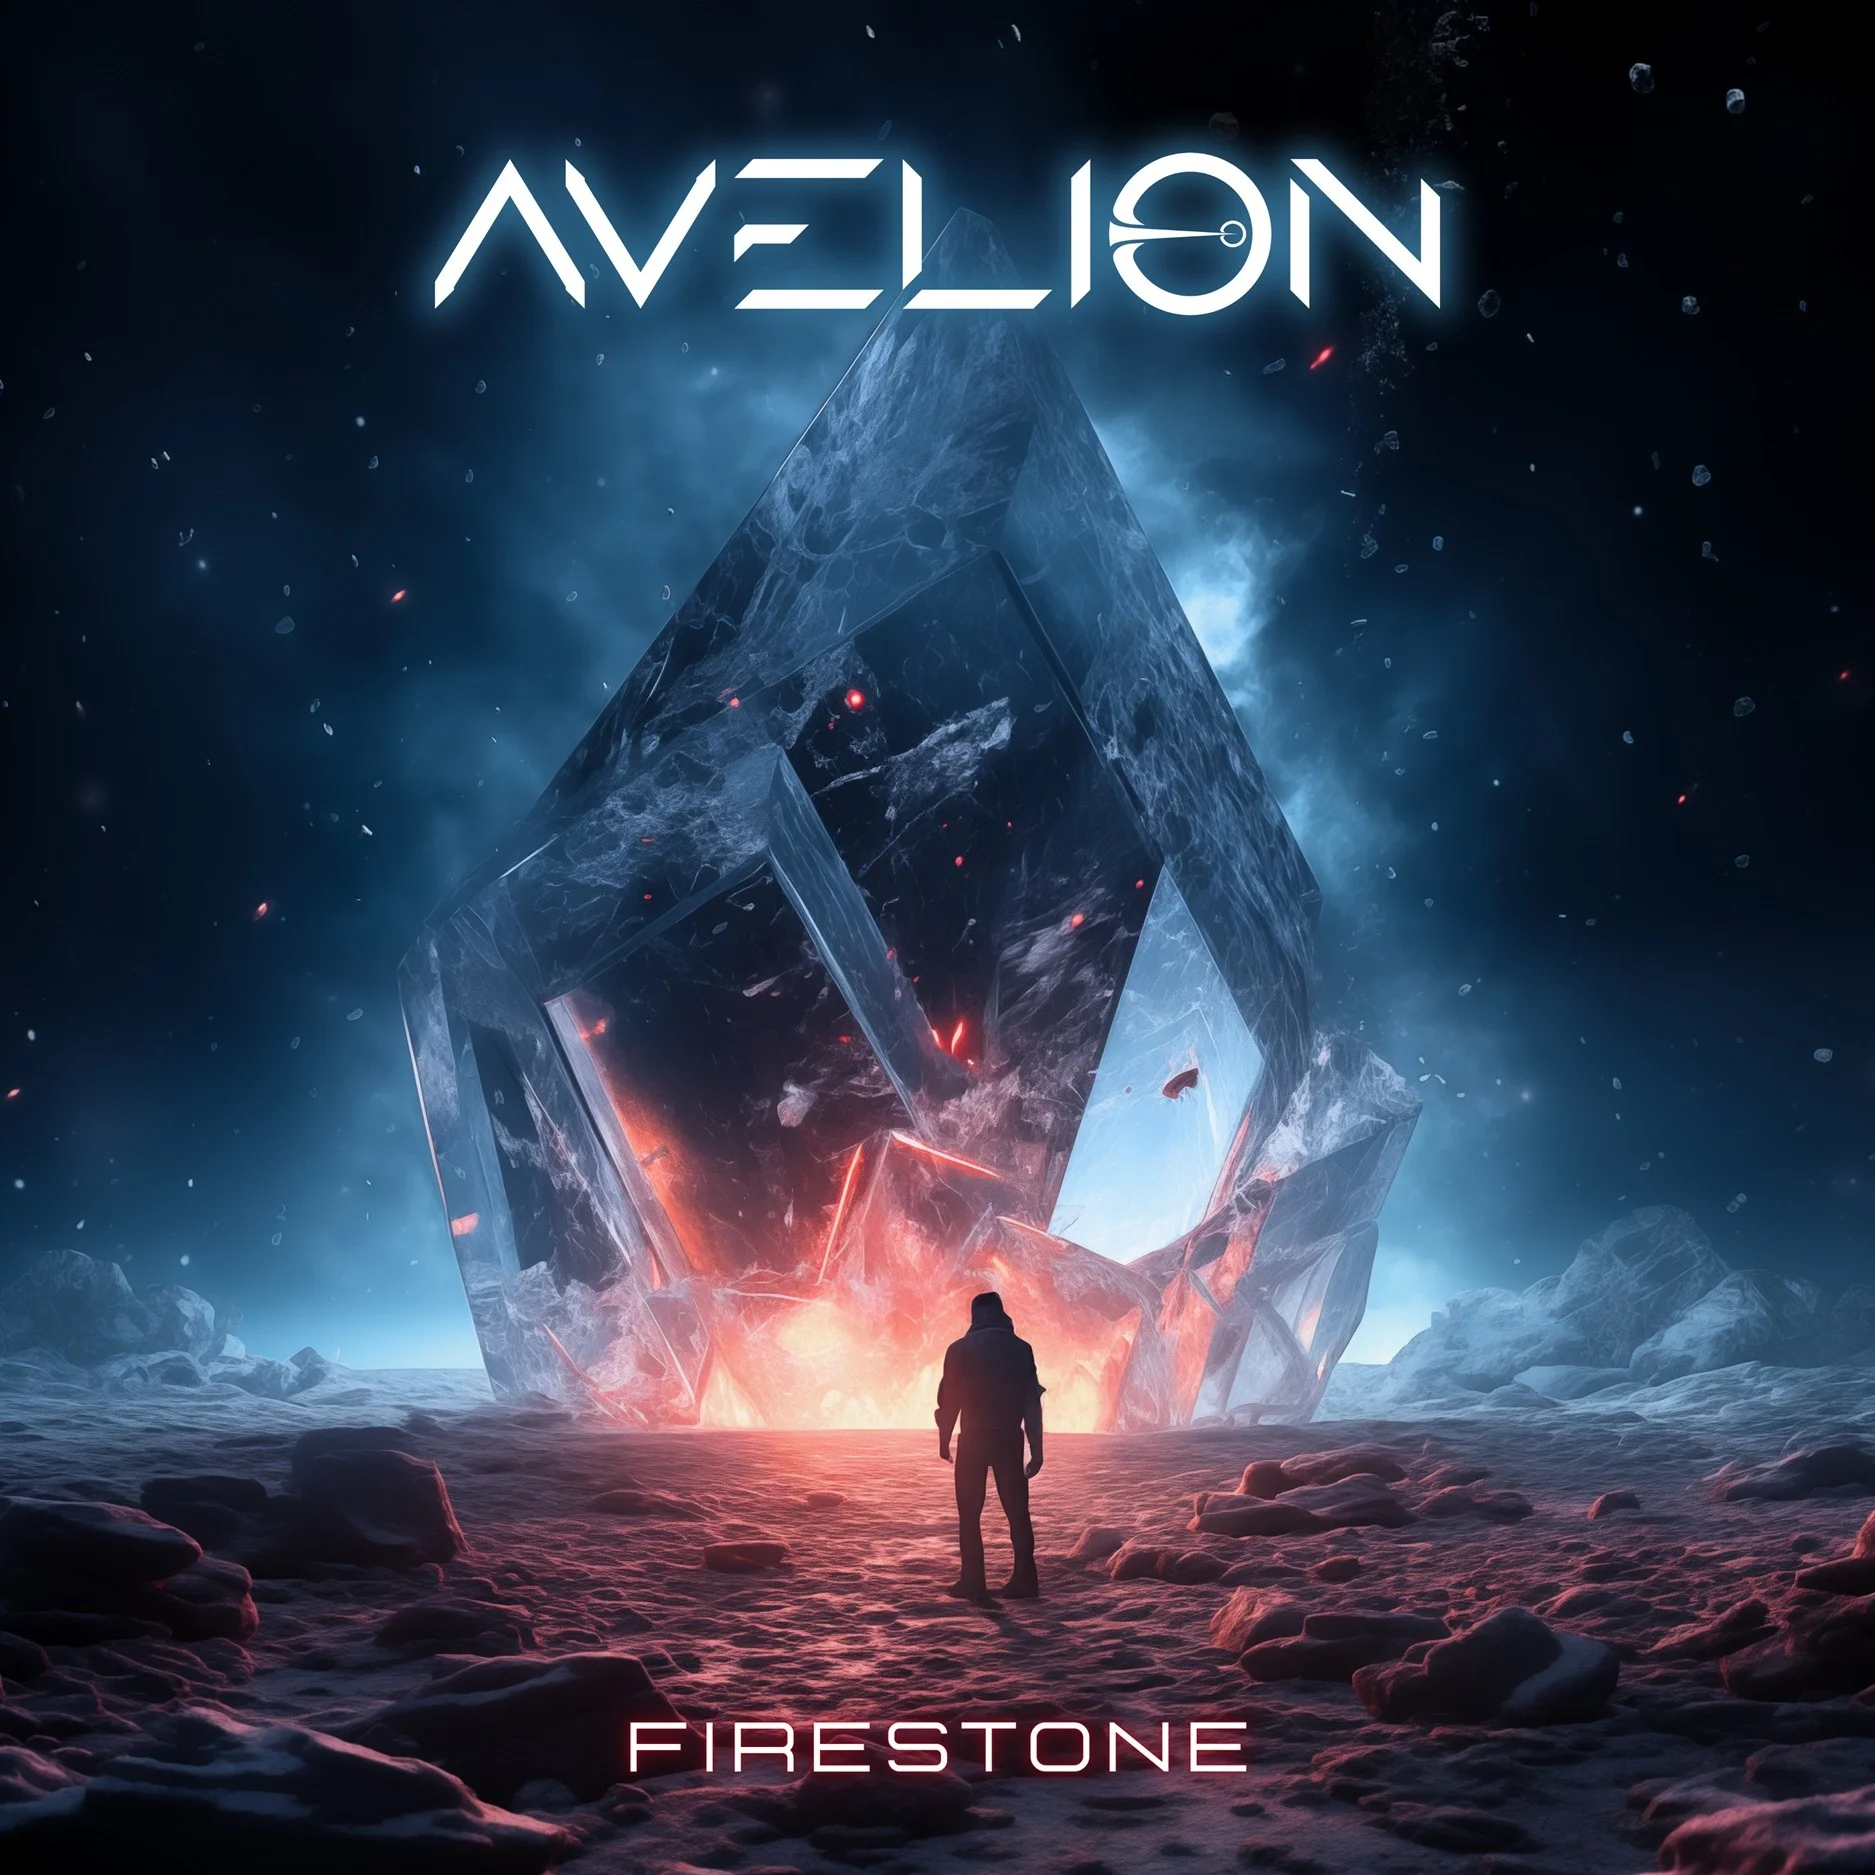 AVELION: i progressive metaller italiani presentano il nuovo singolo “Firestone”